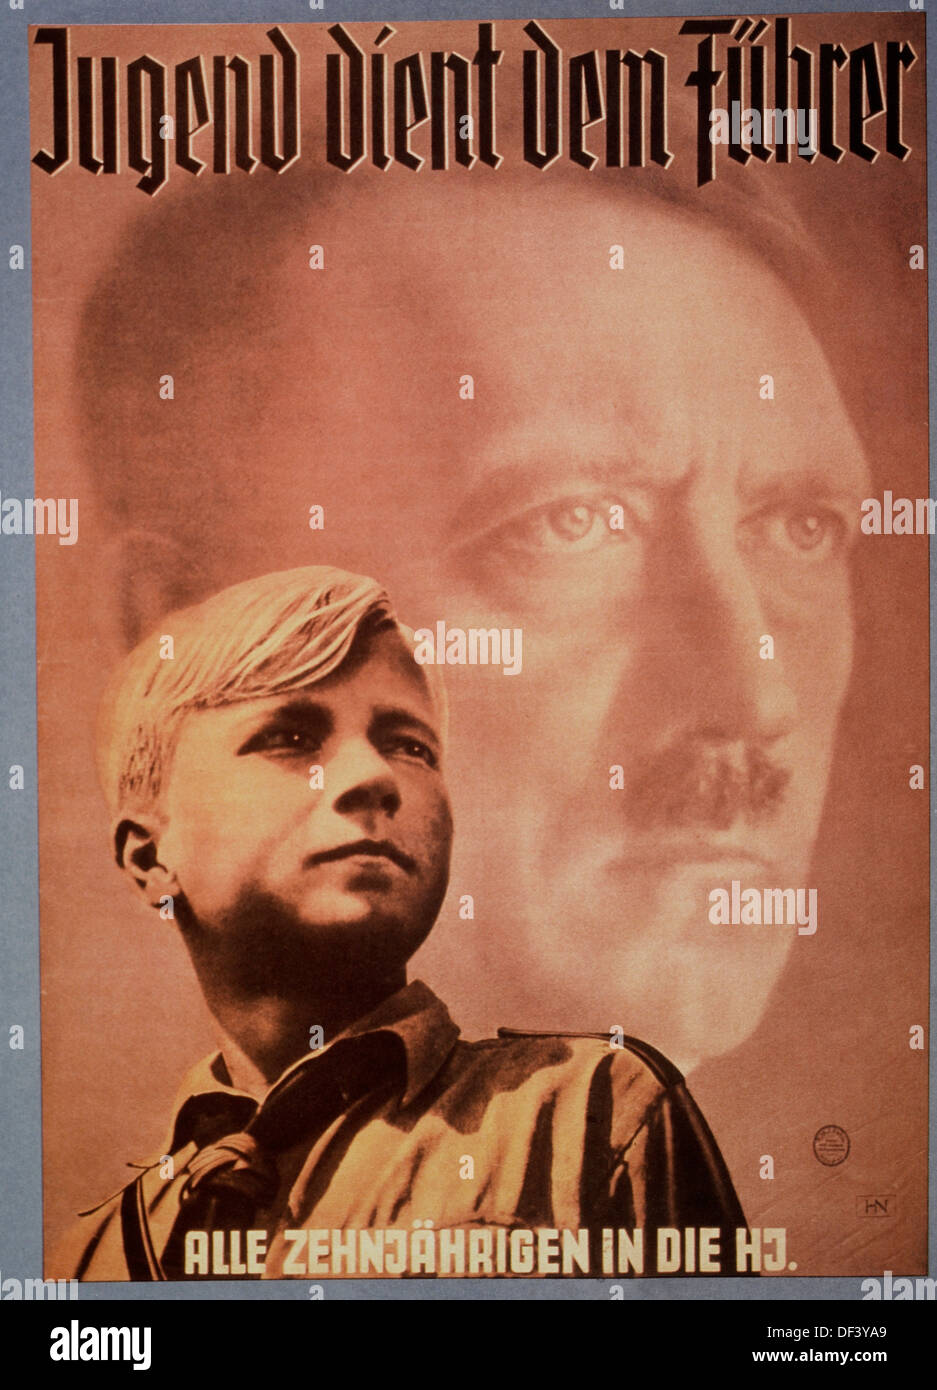 Adolf Hitler et le jeune garçon, Nazi Affiche jeunesse, "La jeunesse sert le Führer', Allemagne, 1939 Banque D'Images